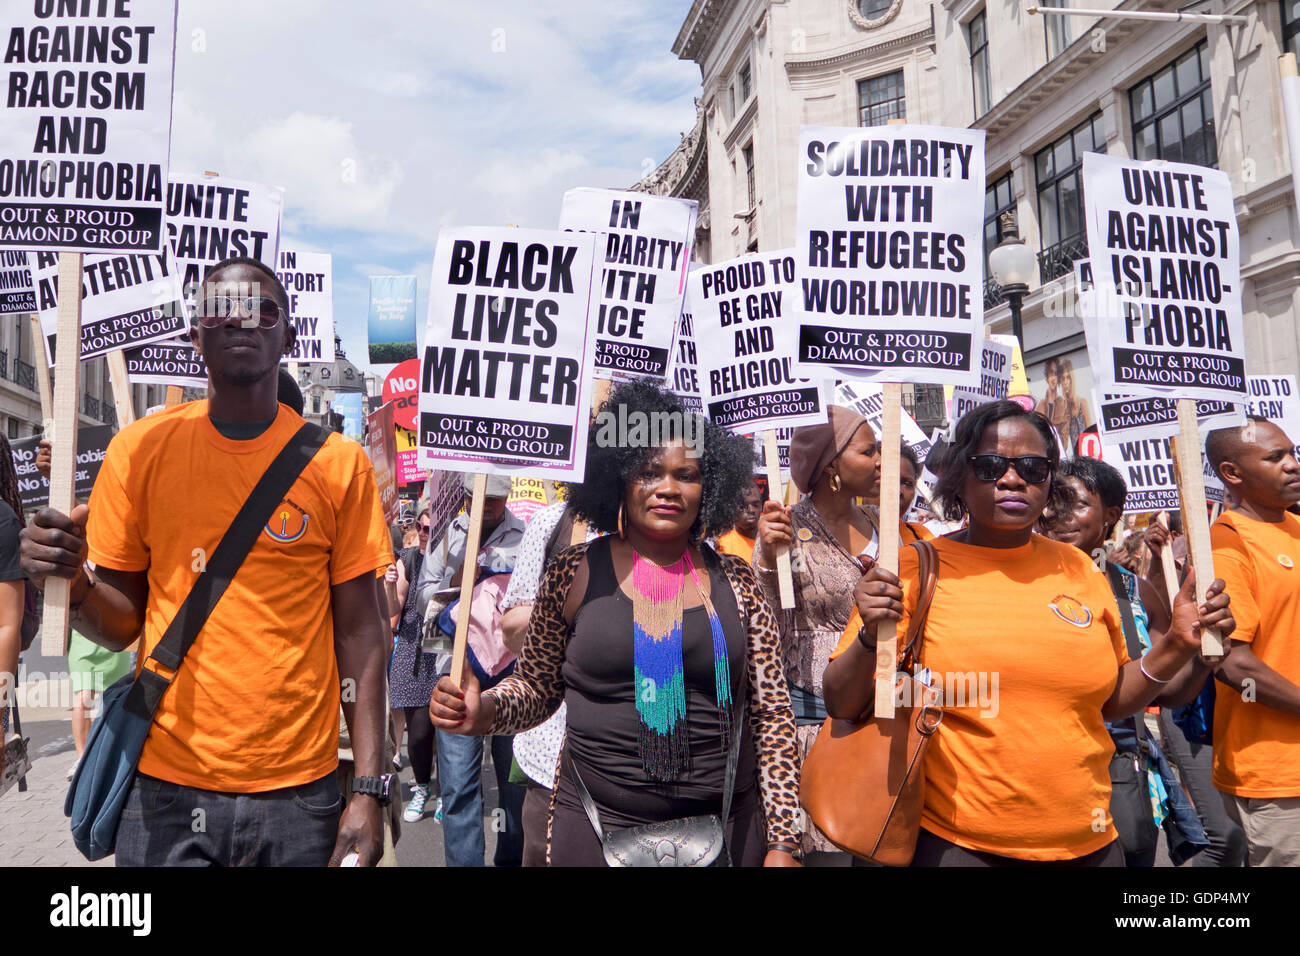 Gay-Out & fieri Diamond gruppo donne dai gruppi LGBT protesta al Rally e marzo attraverso il centro di Londra contro il razzismo e la Tory Foto Stock